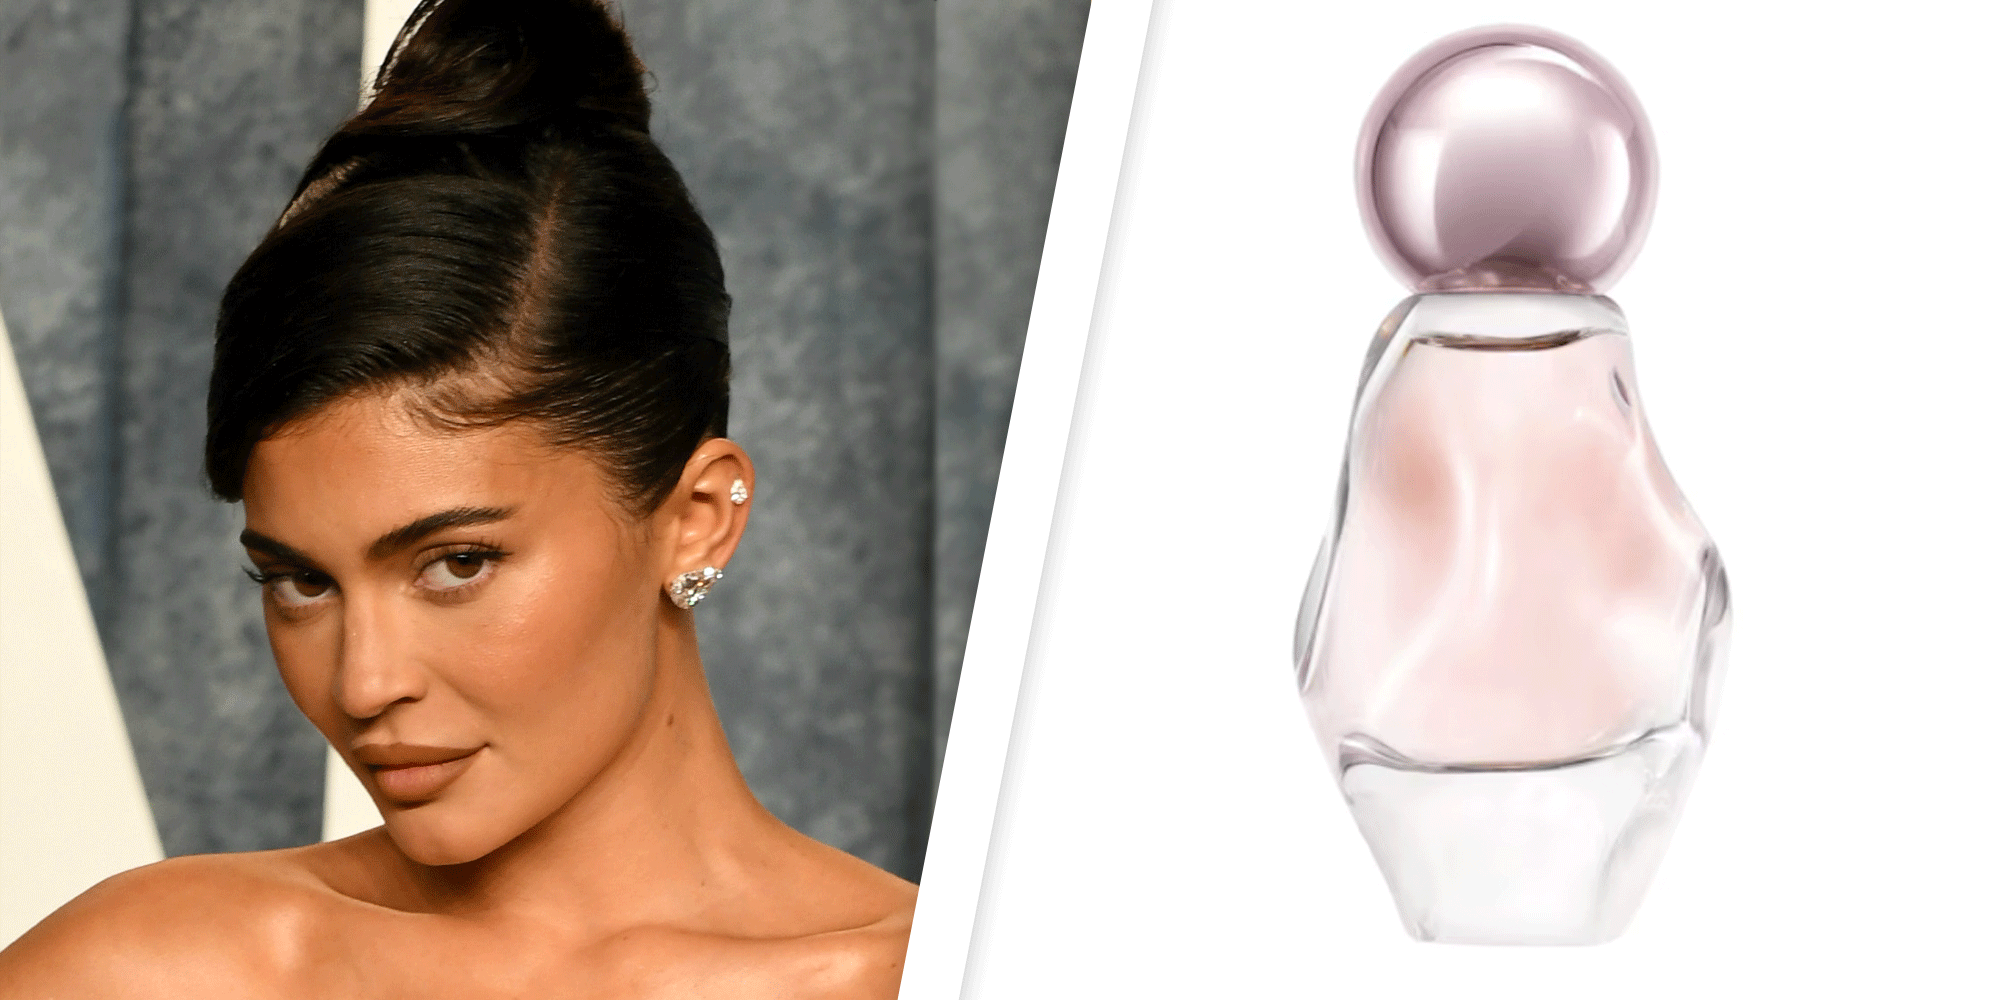 Neue Parfum Highlights: So riechen die Düfte von Kylie Jenner und Co.